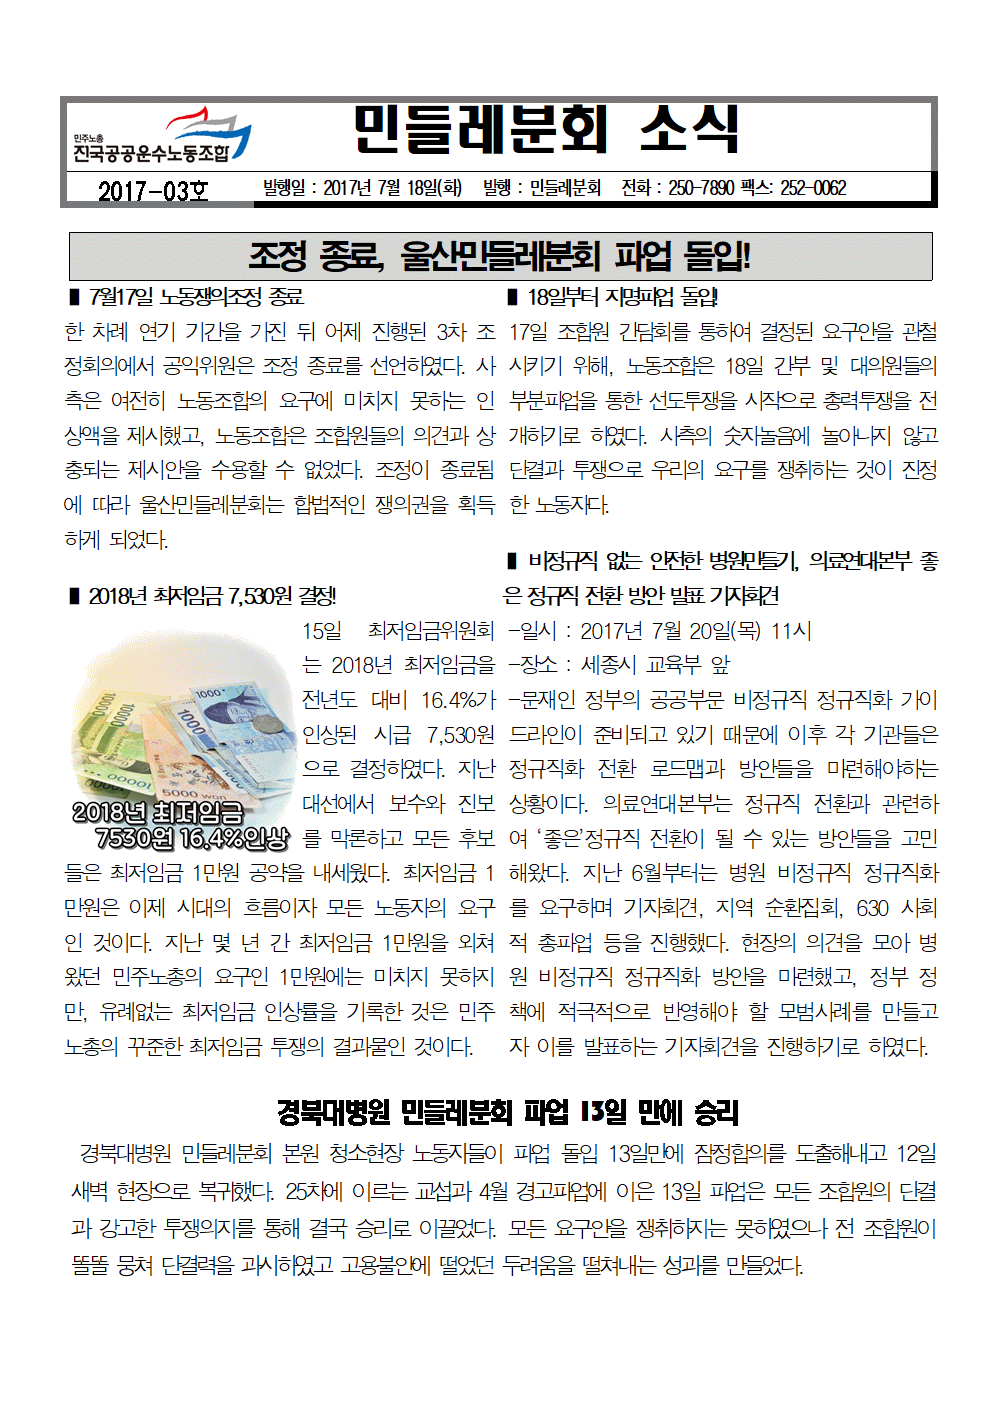 울산민들레분회 소식지 2017-03호(앞).gif